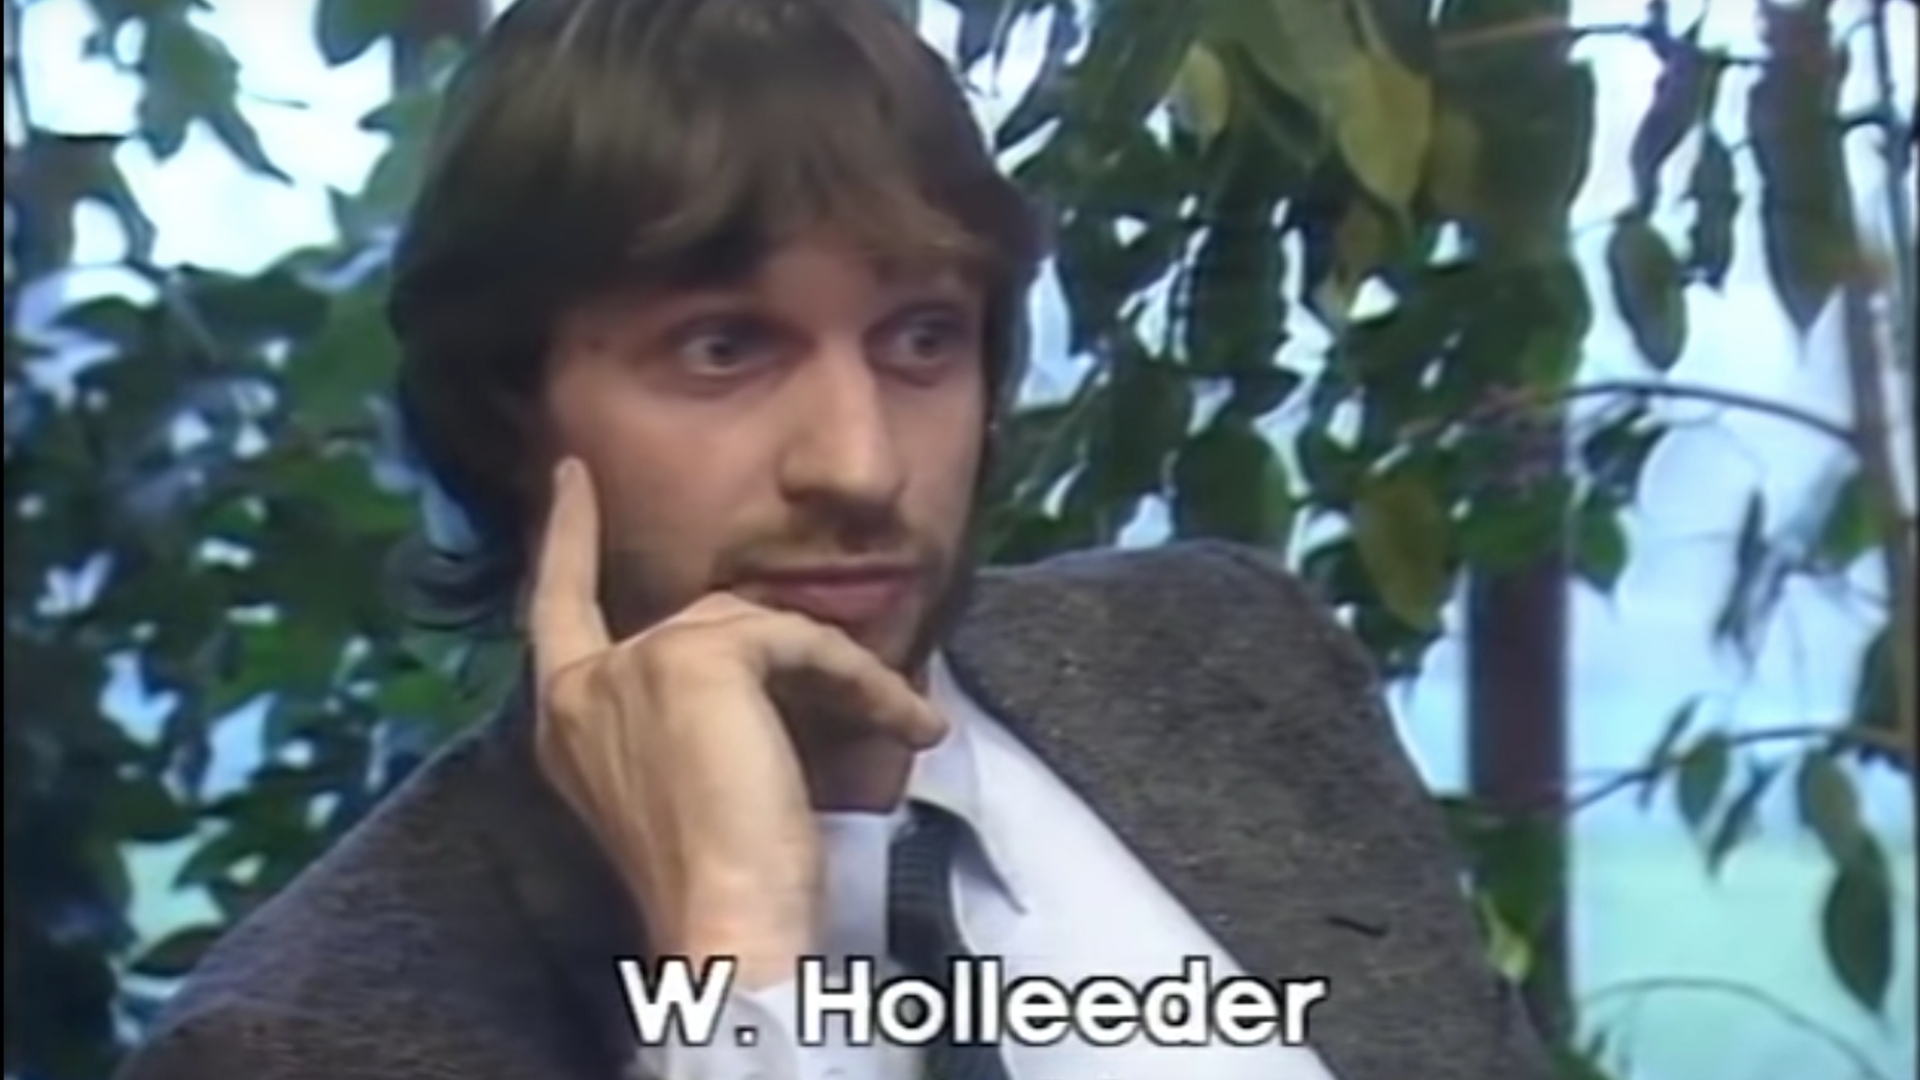 Willem Holleeder (verdachte)